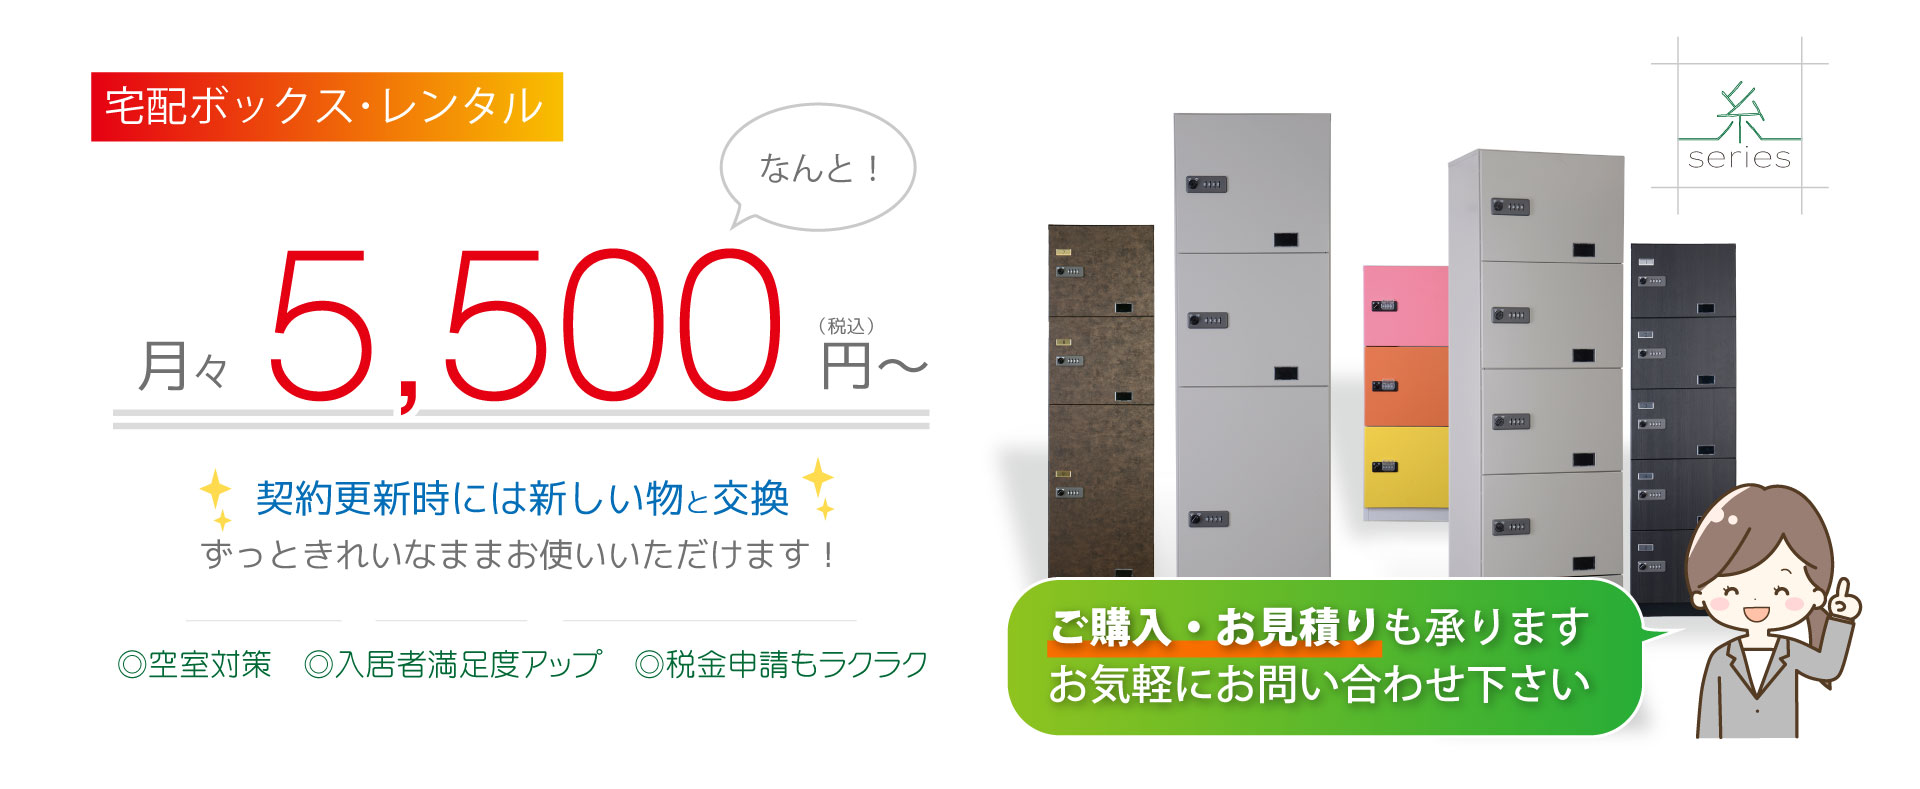 宅配ボックスが月額5000円から設置できます。税金対策・空室対策・入居者満足度アップ